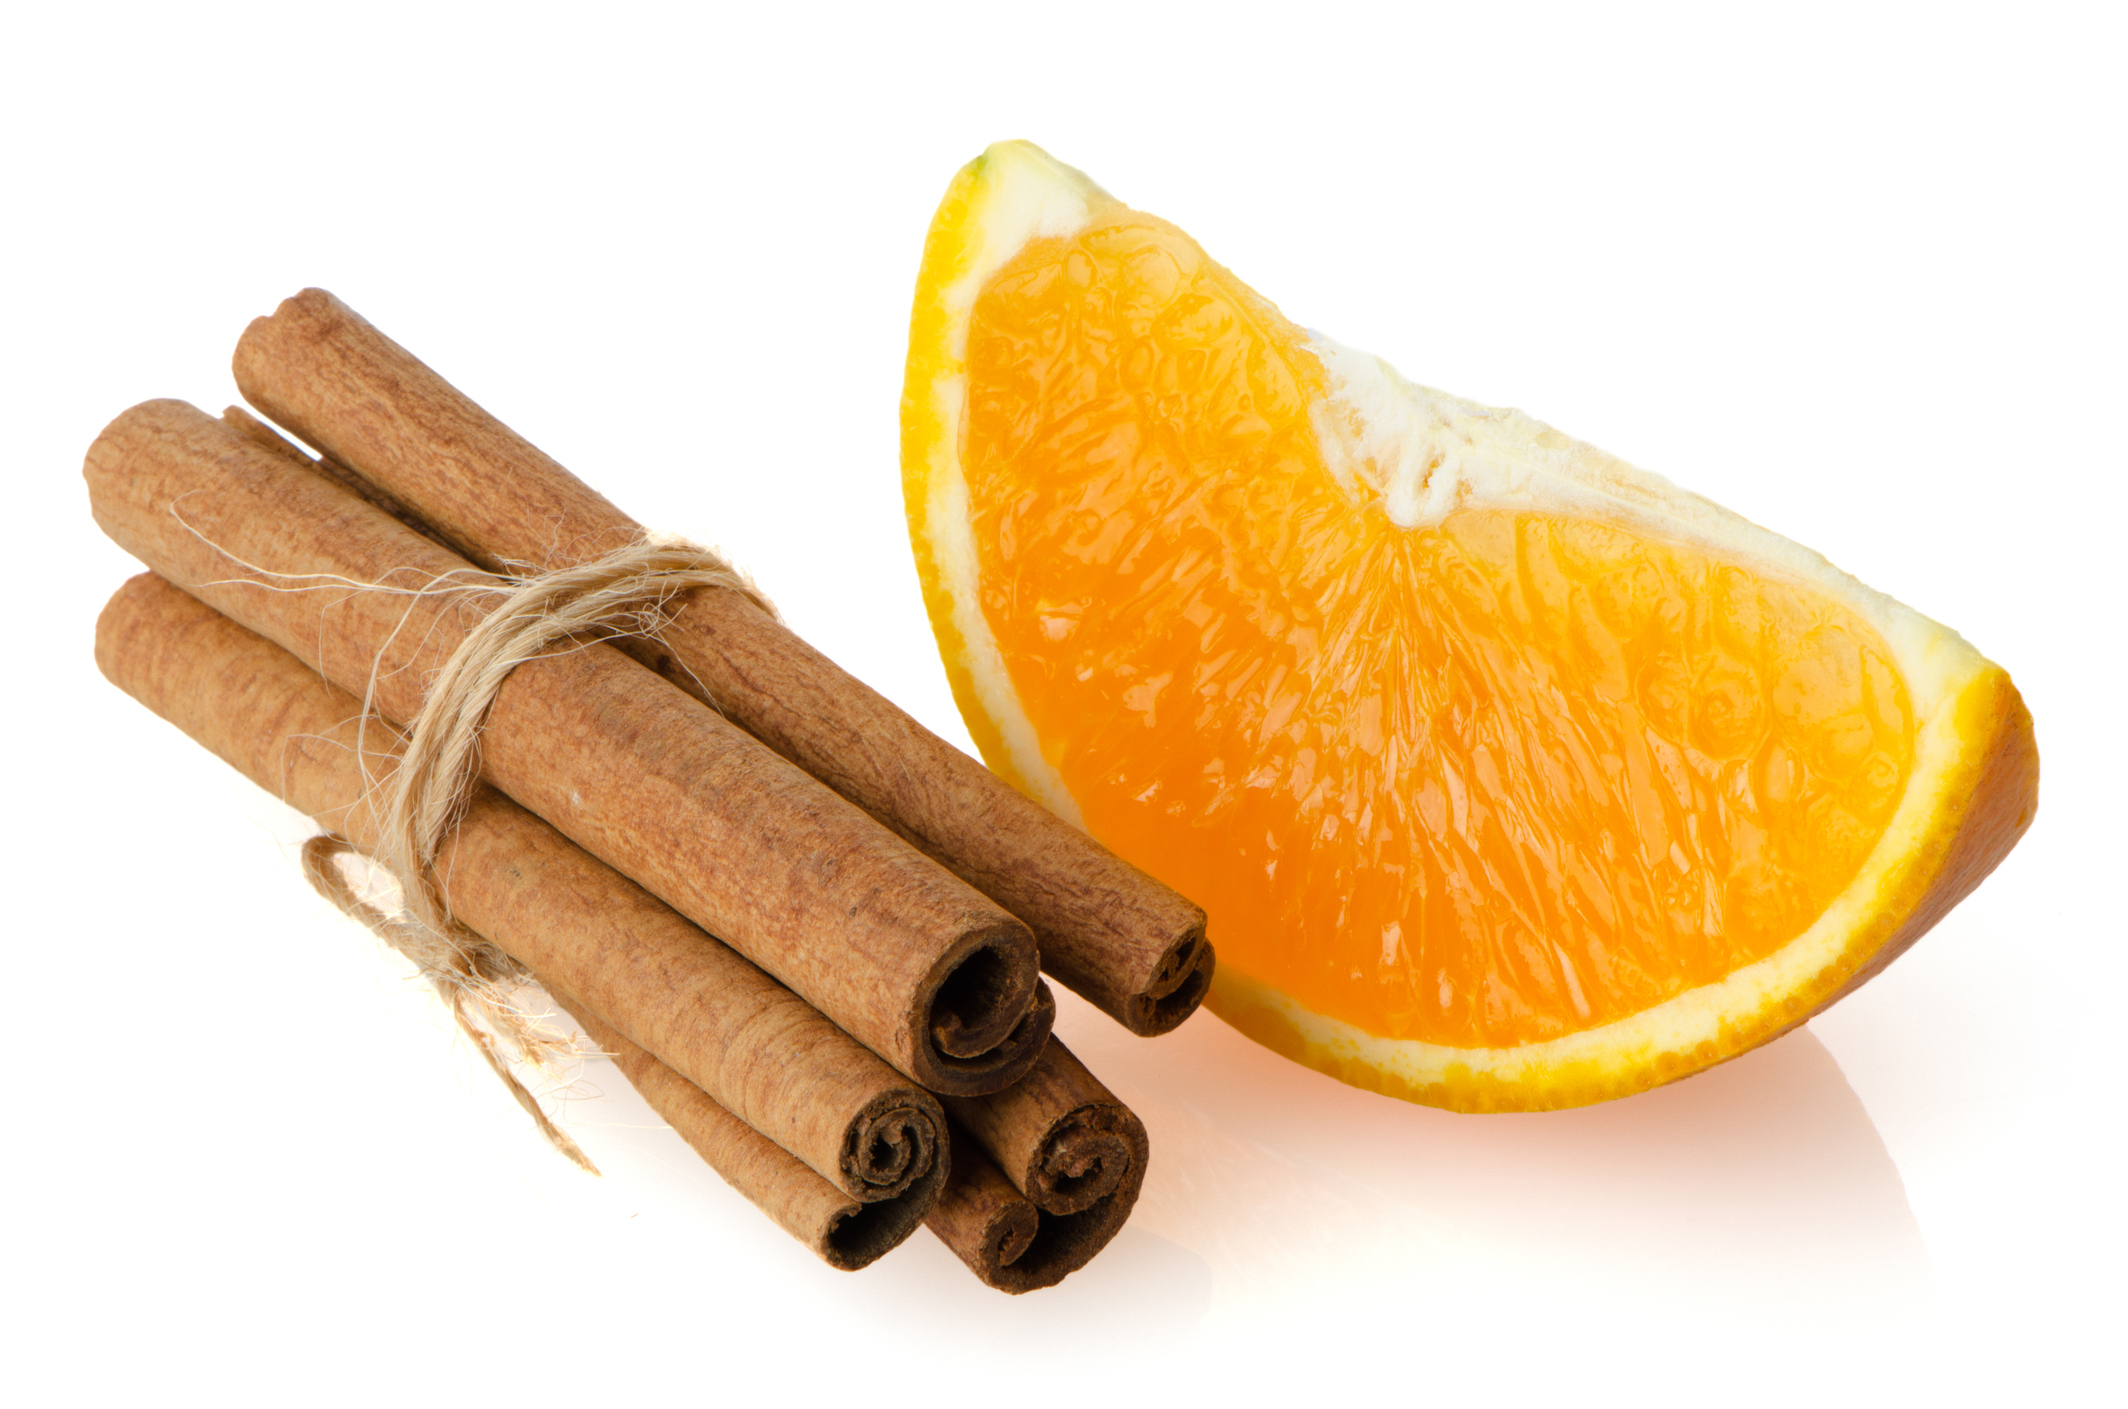 Комбинацията от мед, канела и портокал освен че е вкусна, се използва и за отслабване.